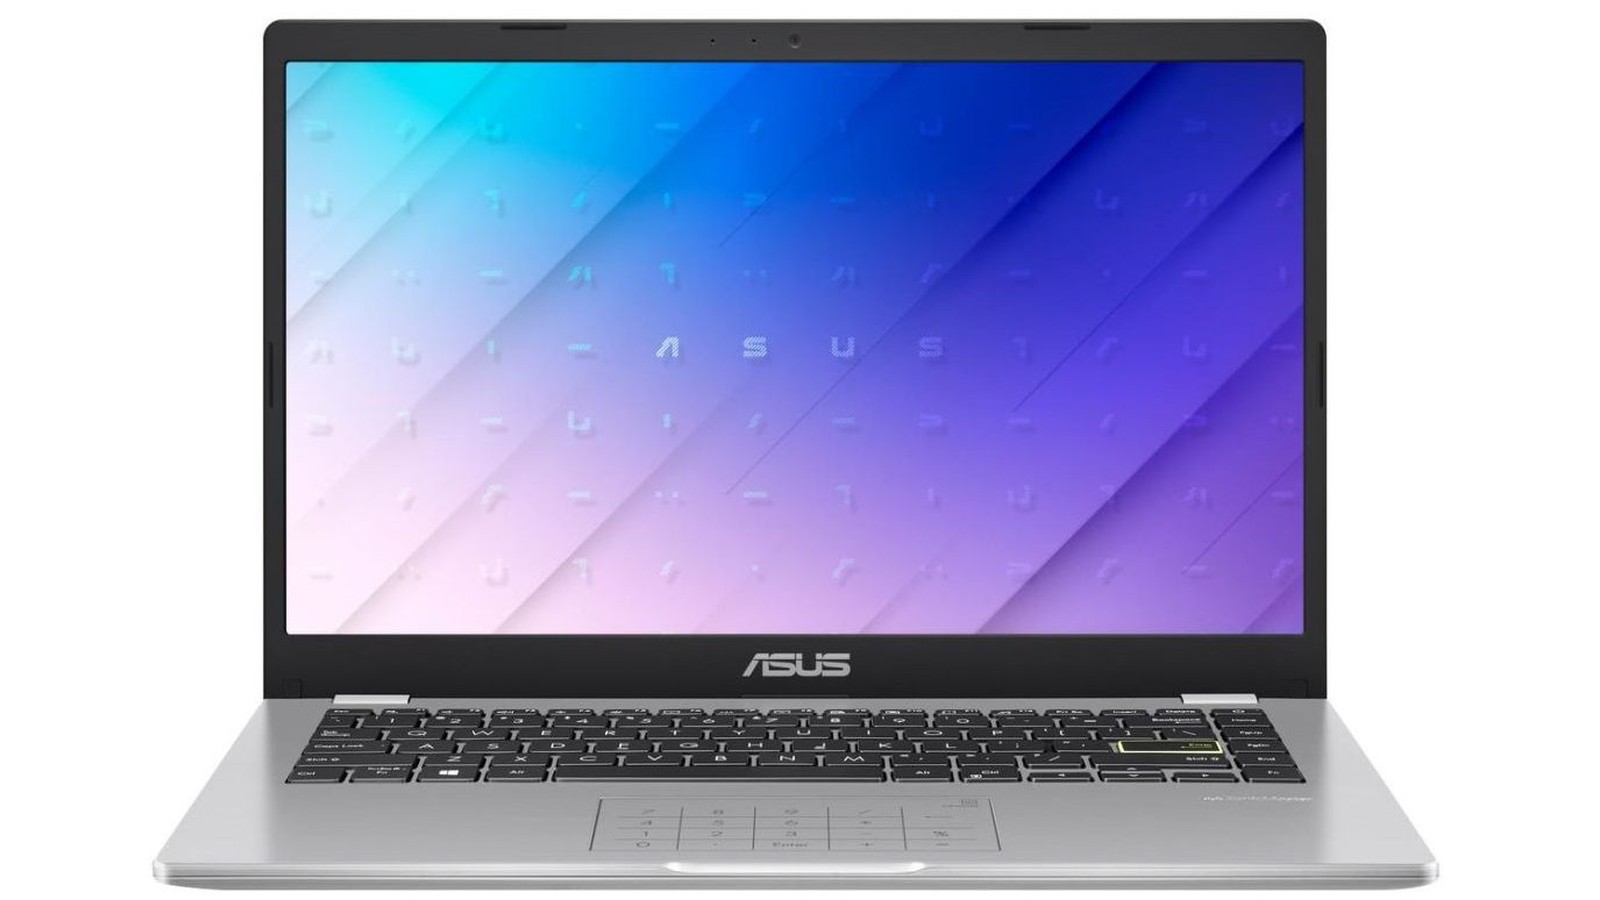 Asus E410 laptop